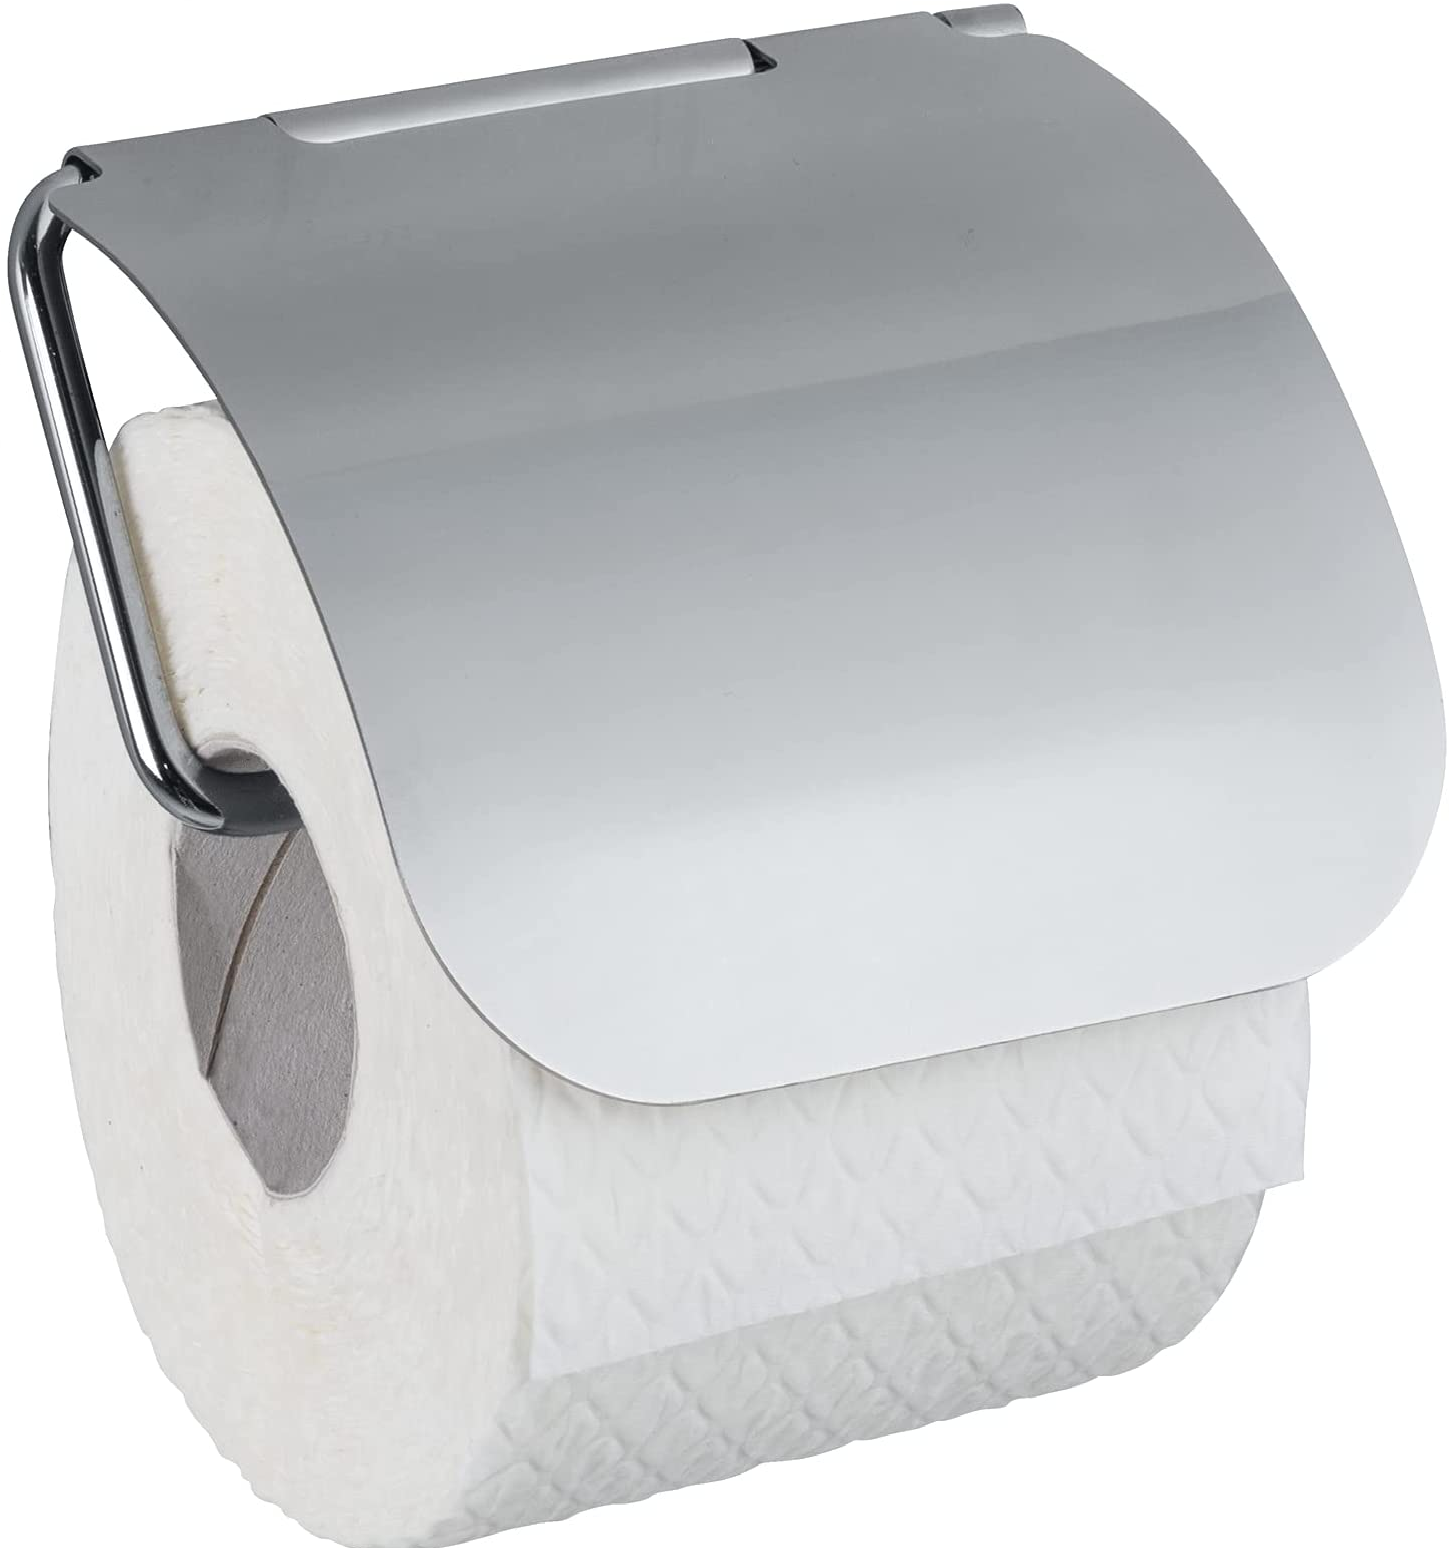 Toilettenpapierhalter mit Deckel Osimo, WC-Rollenhalter, Befestigen ohne bohren, sicherer Halt durch statische Haftung auf glatten, luftundurchlässigen Flächen, 13 x 13,5 x 3 cm